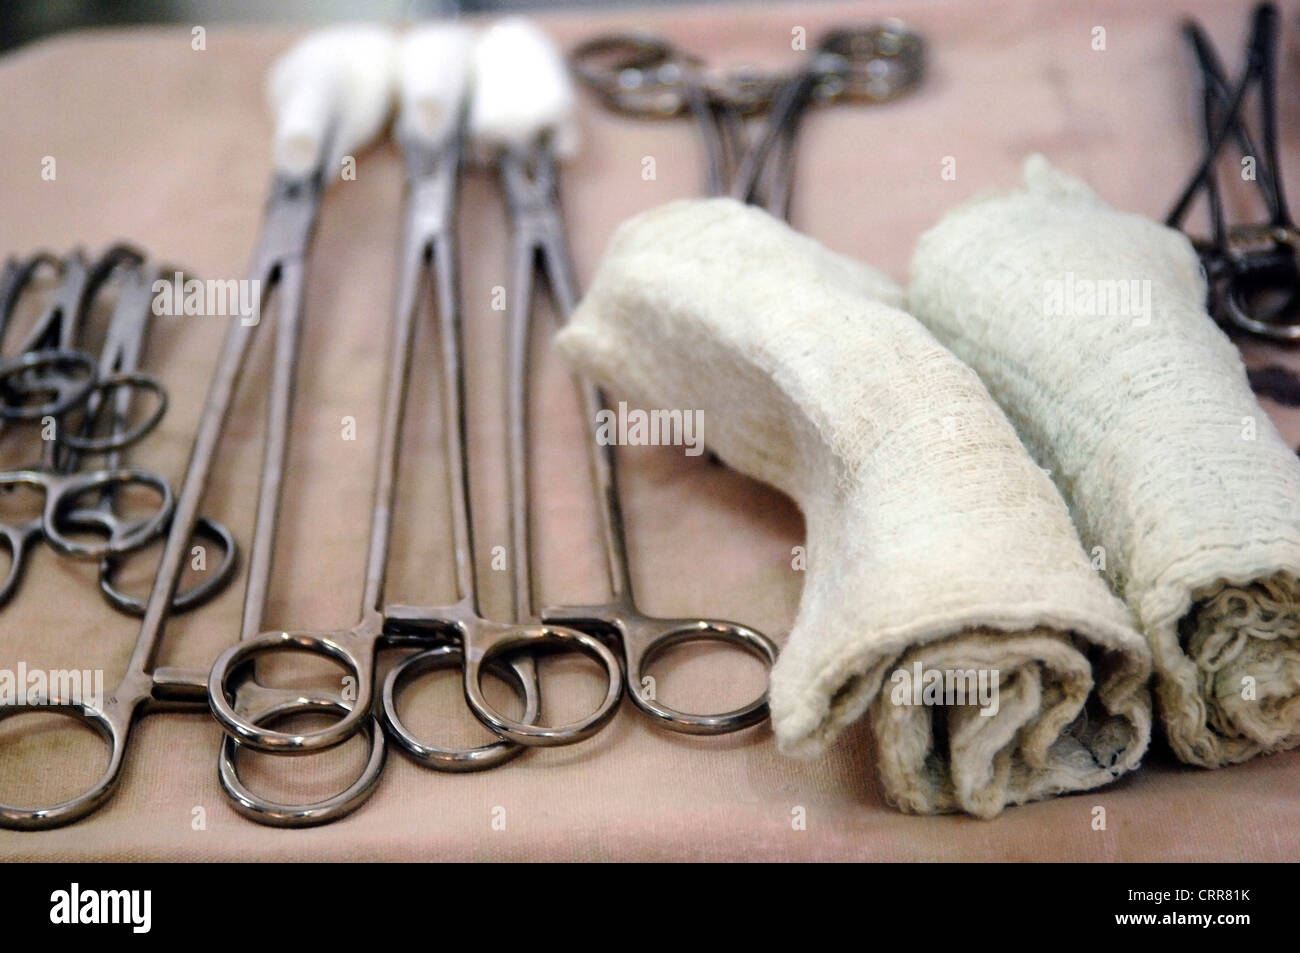 Tijeras quirúrgicas, fórceps e hisopos en una bandeja, médicos establecidos y preparados para un procedimiento. Foto de stock